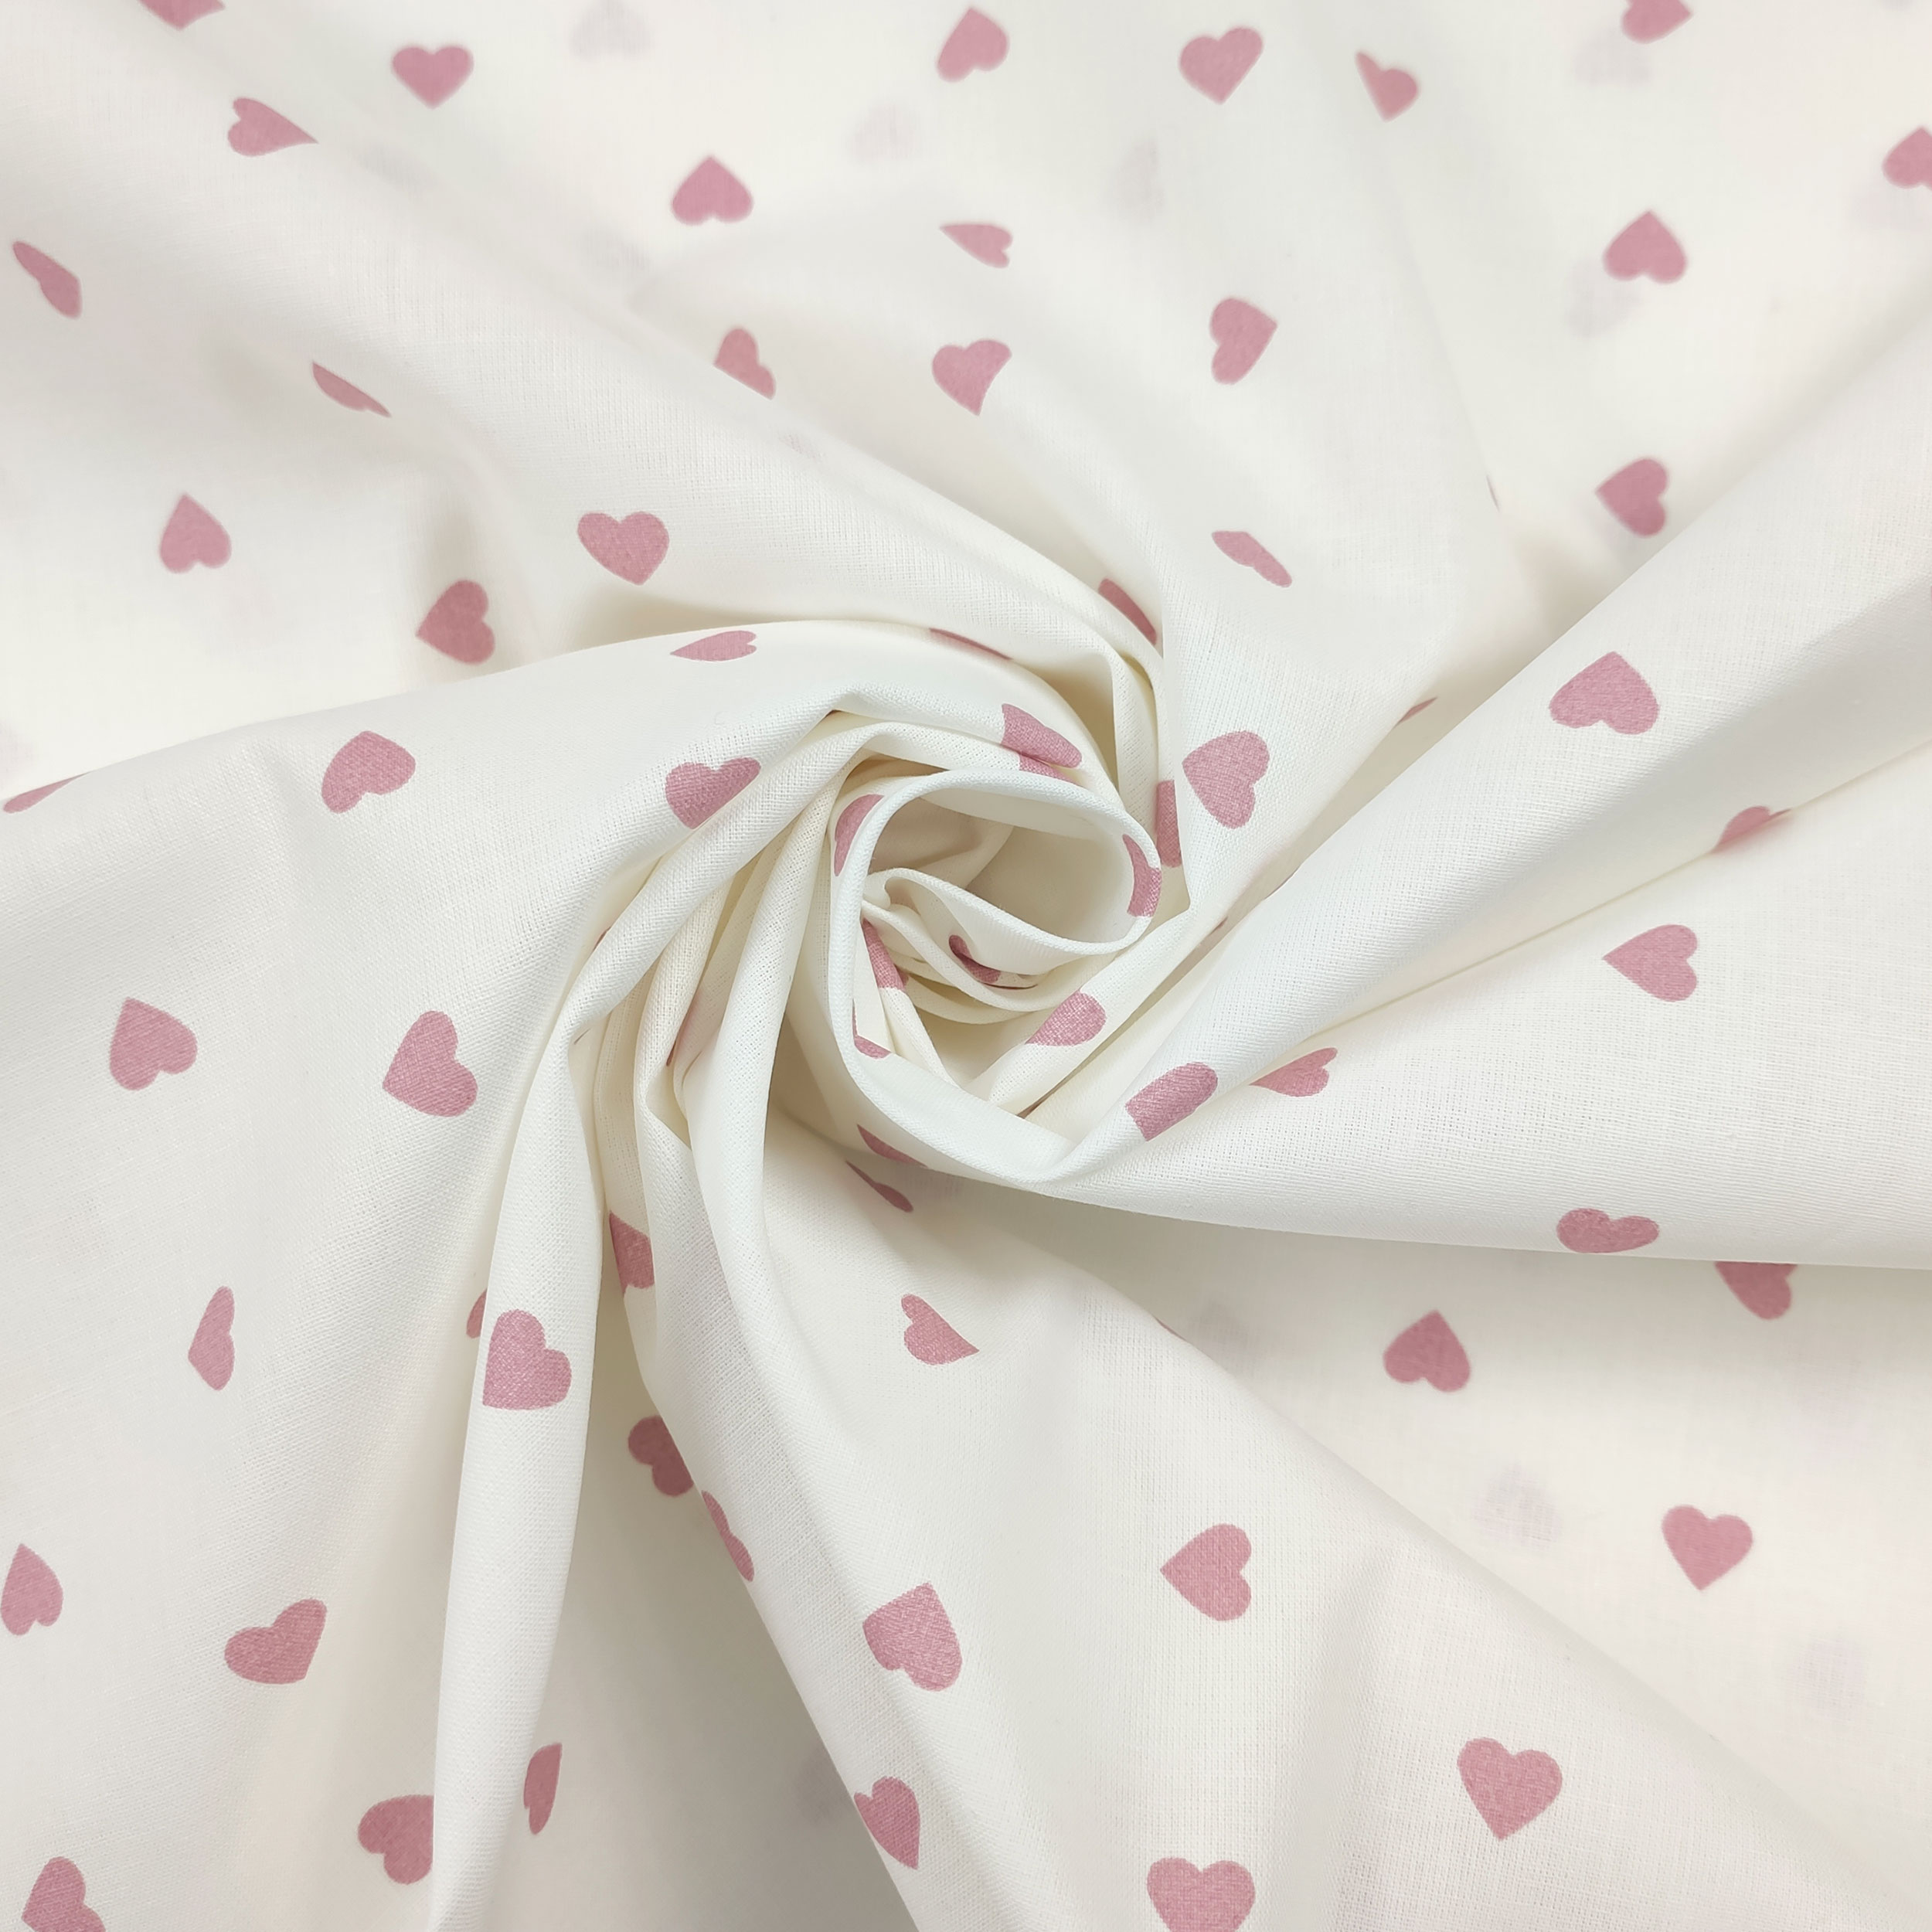 tessuto di cotone cuore rosa antico sfondo bianco